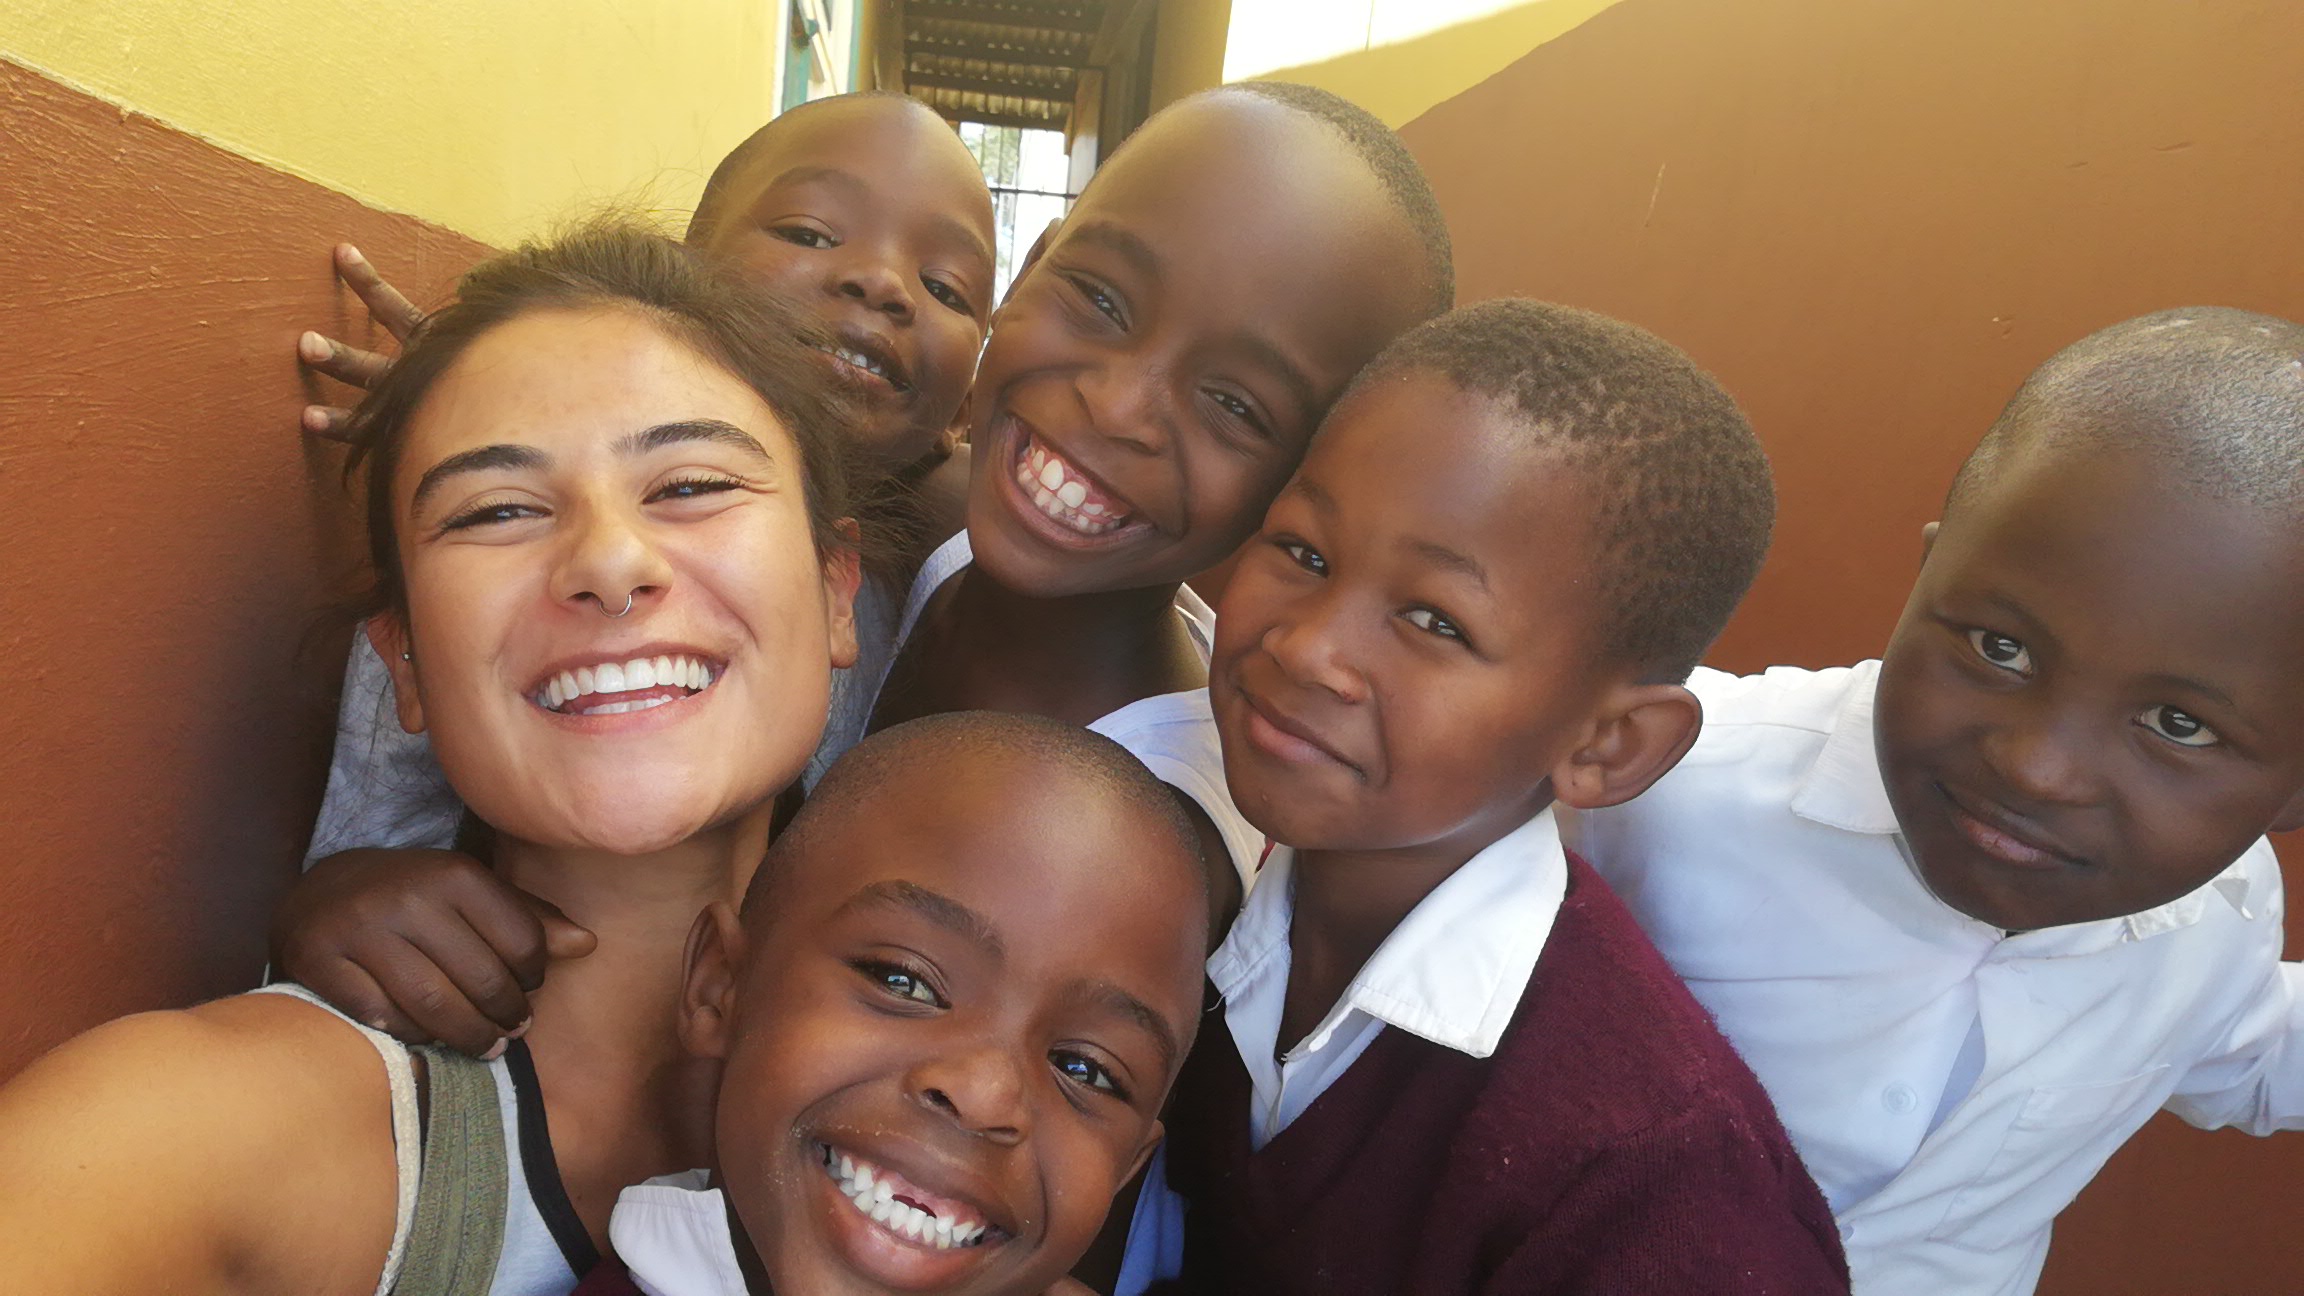 Scopri di più sull'articolo Servizio Civile di OPES: intervista ai volontari che partecipano al progetto “Invictus Cape Town” in Sud Africa